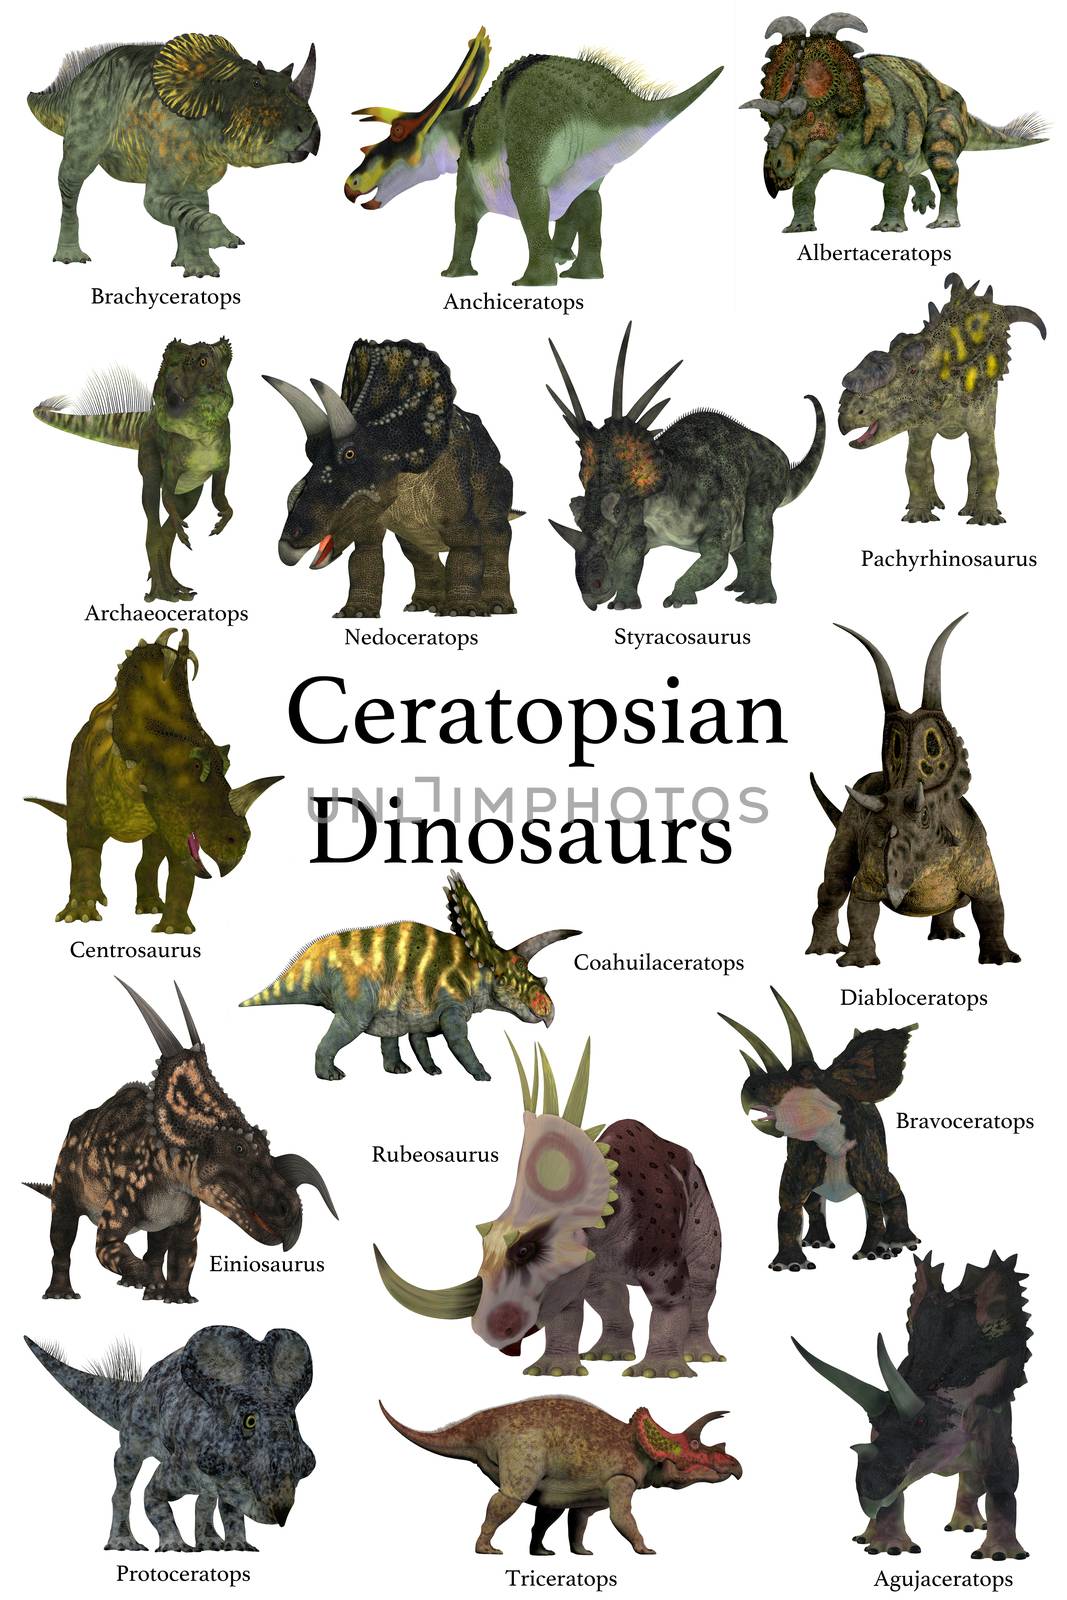 Ceratopsian Dinosaurs by Catmando